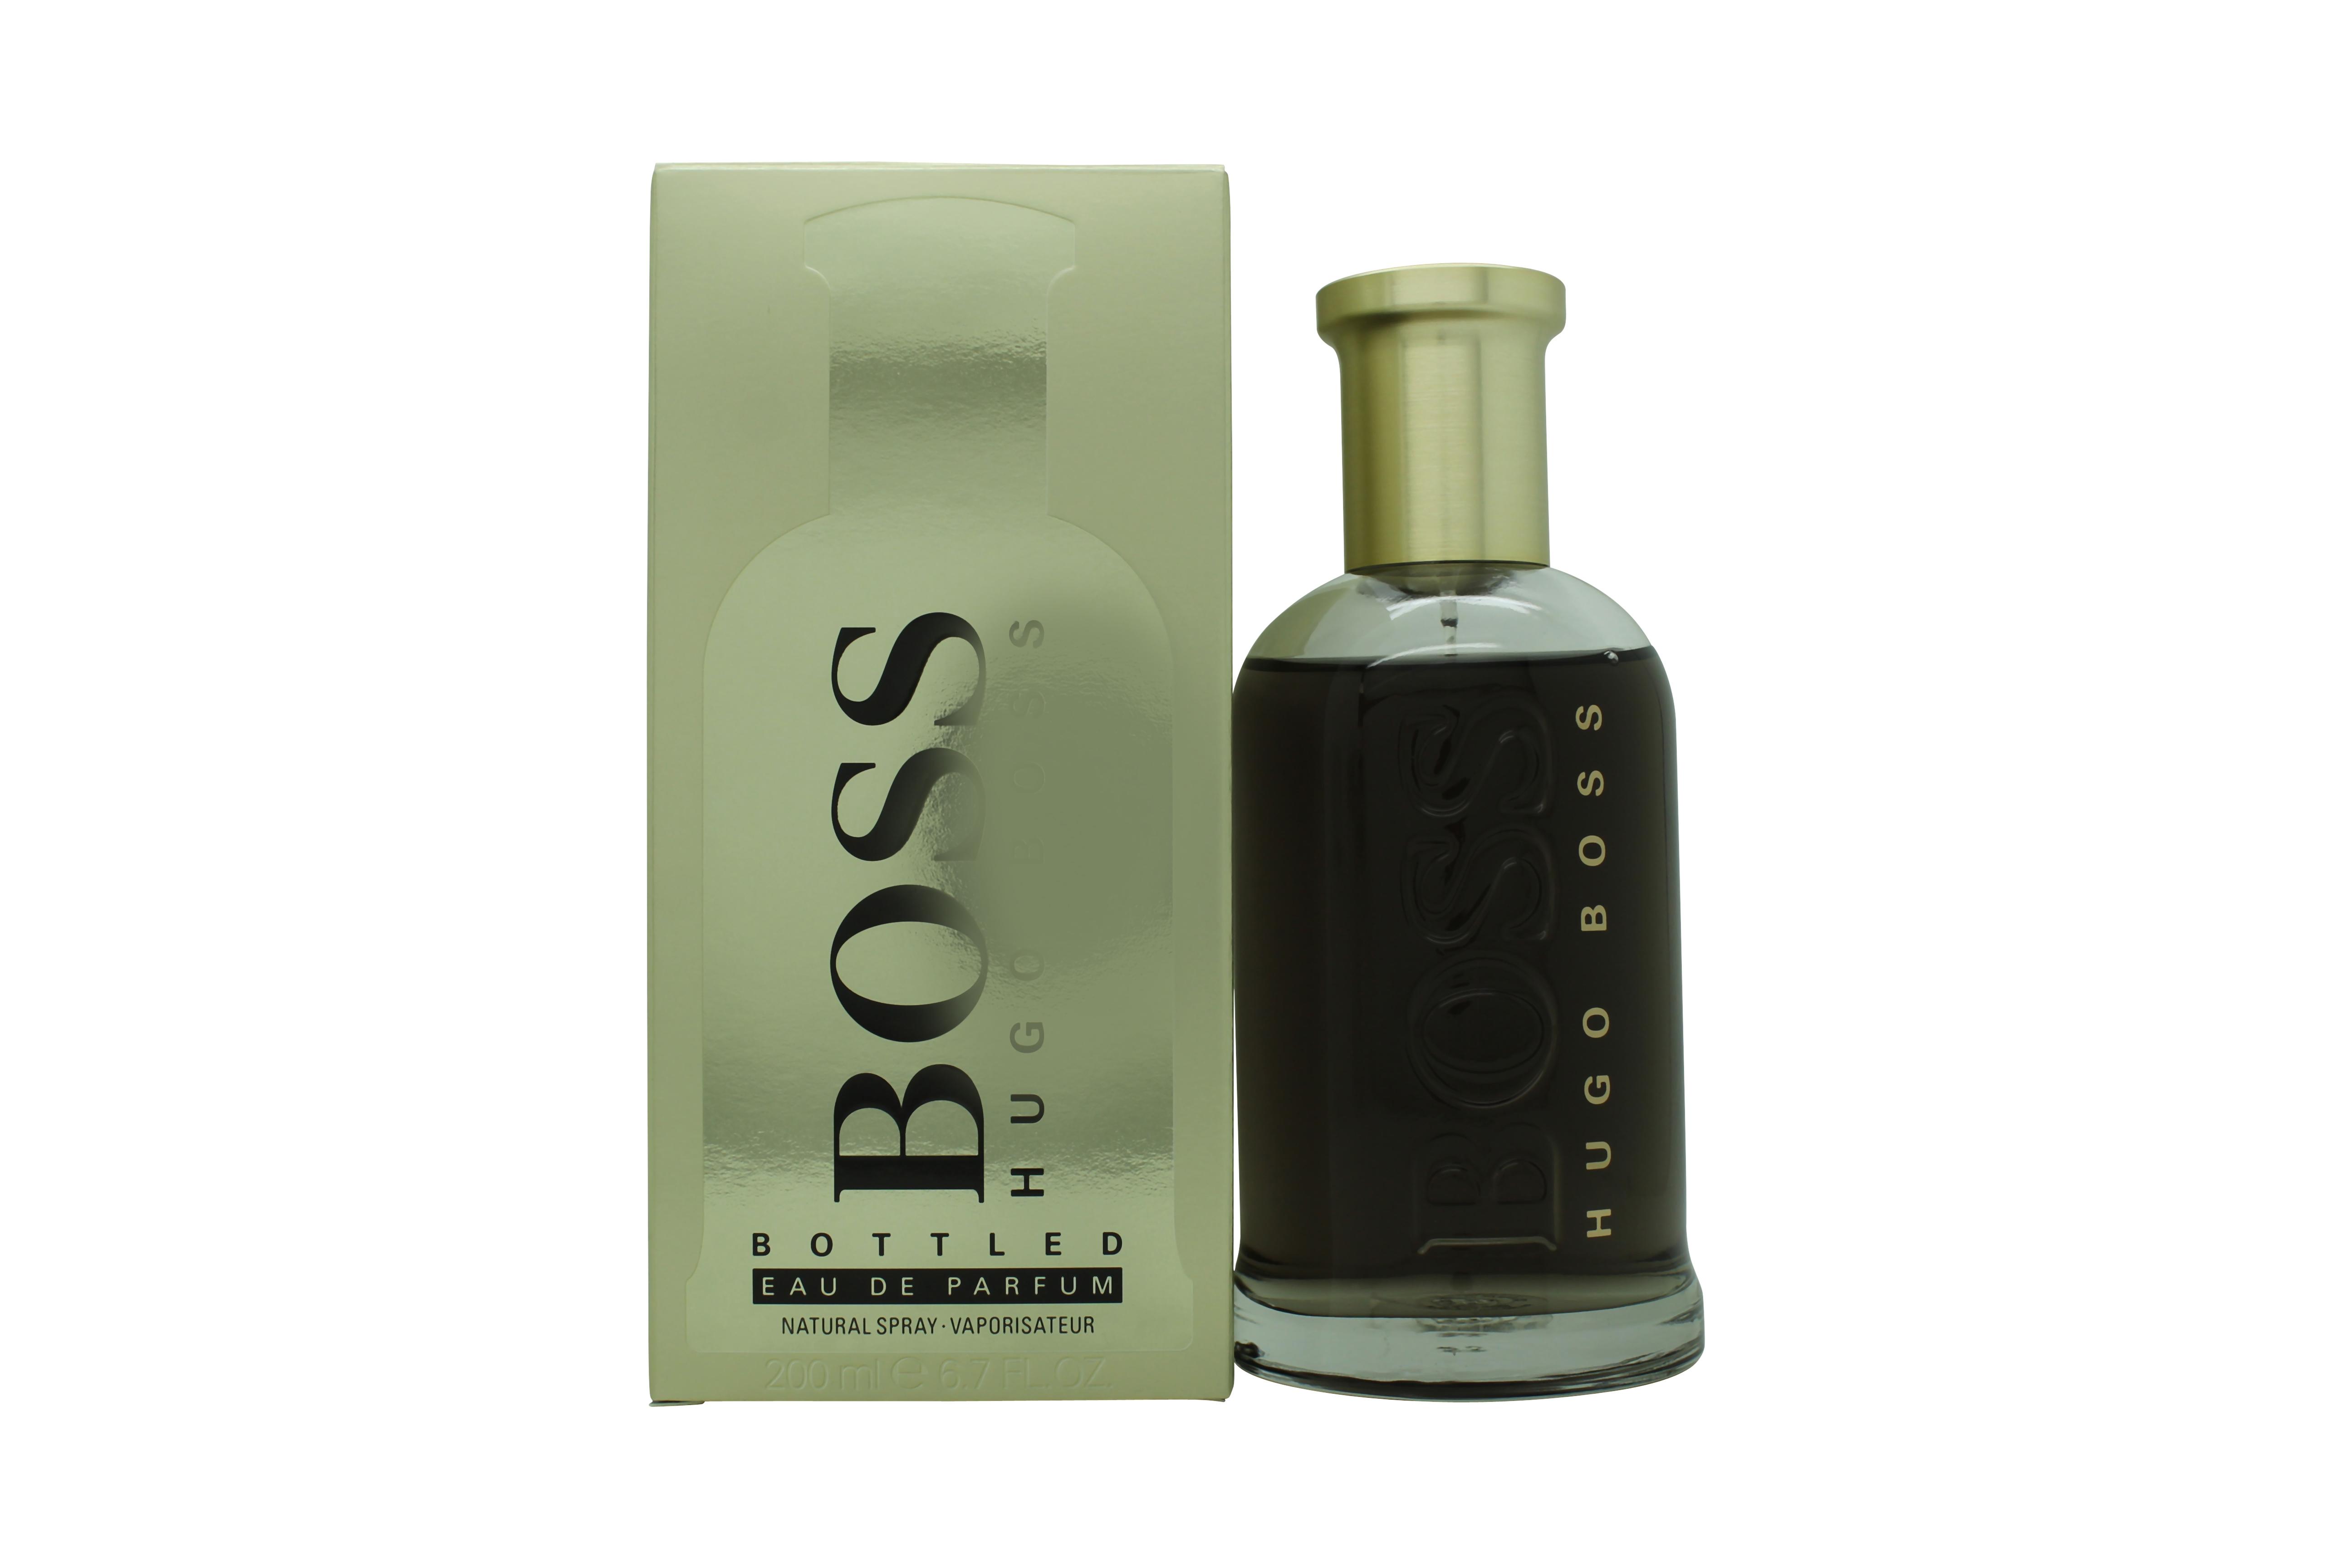 Hugo Boss Boss Bottled Eau de Parfum 200ml Spray